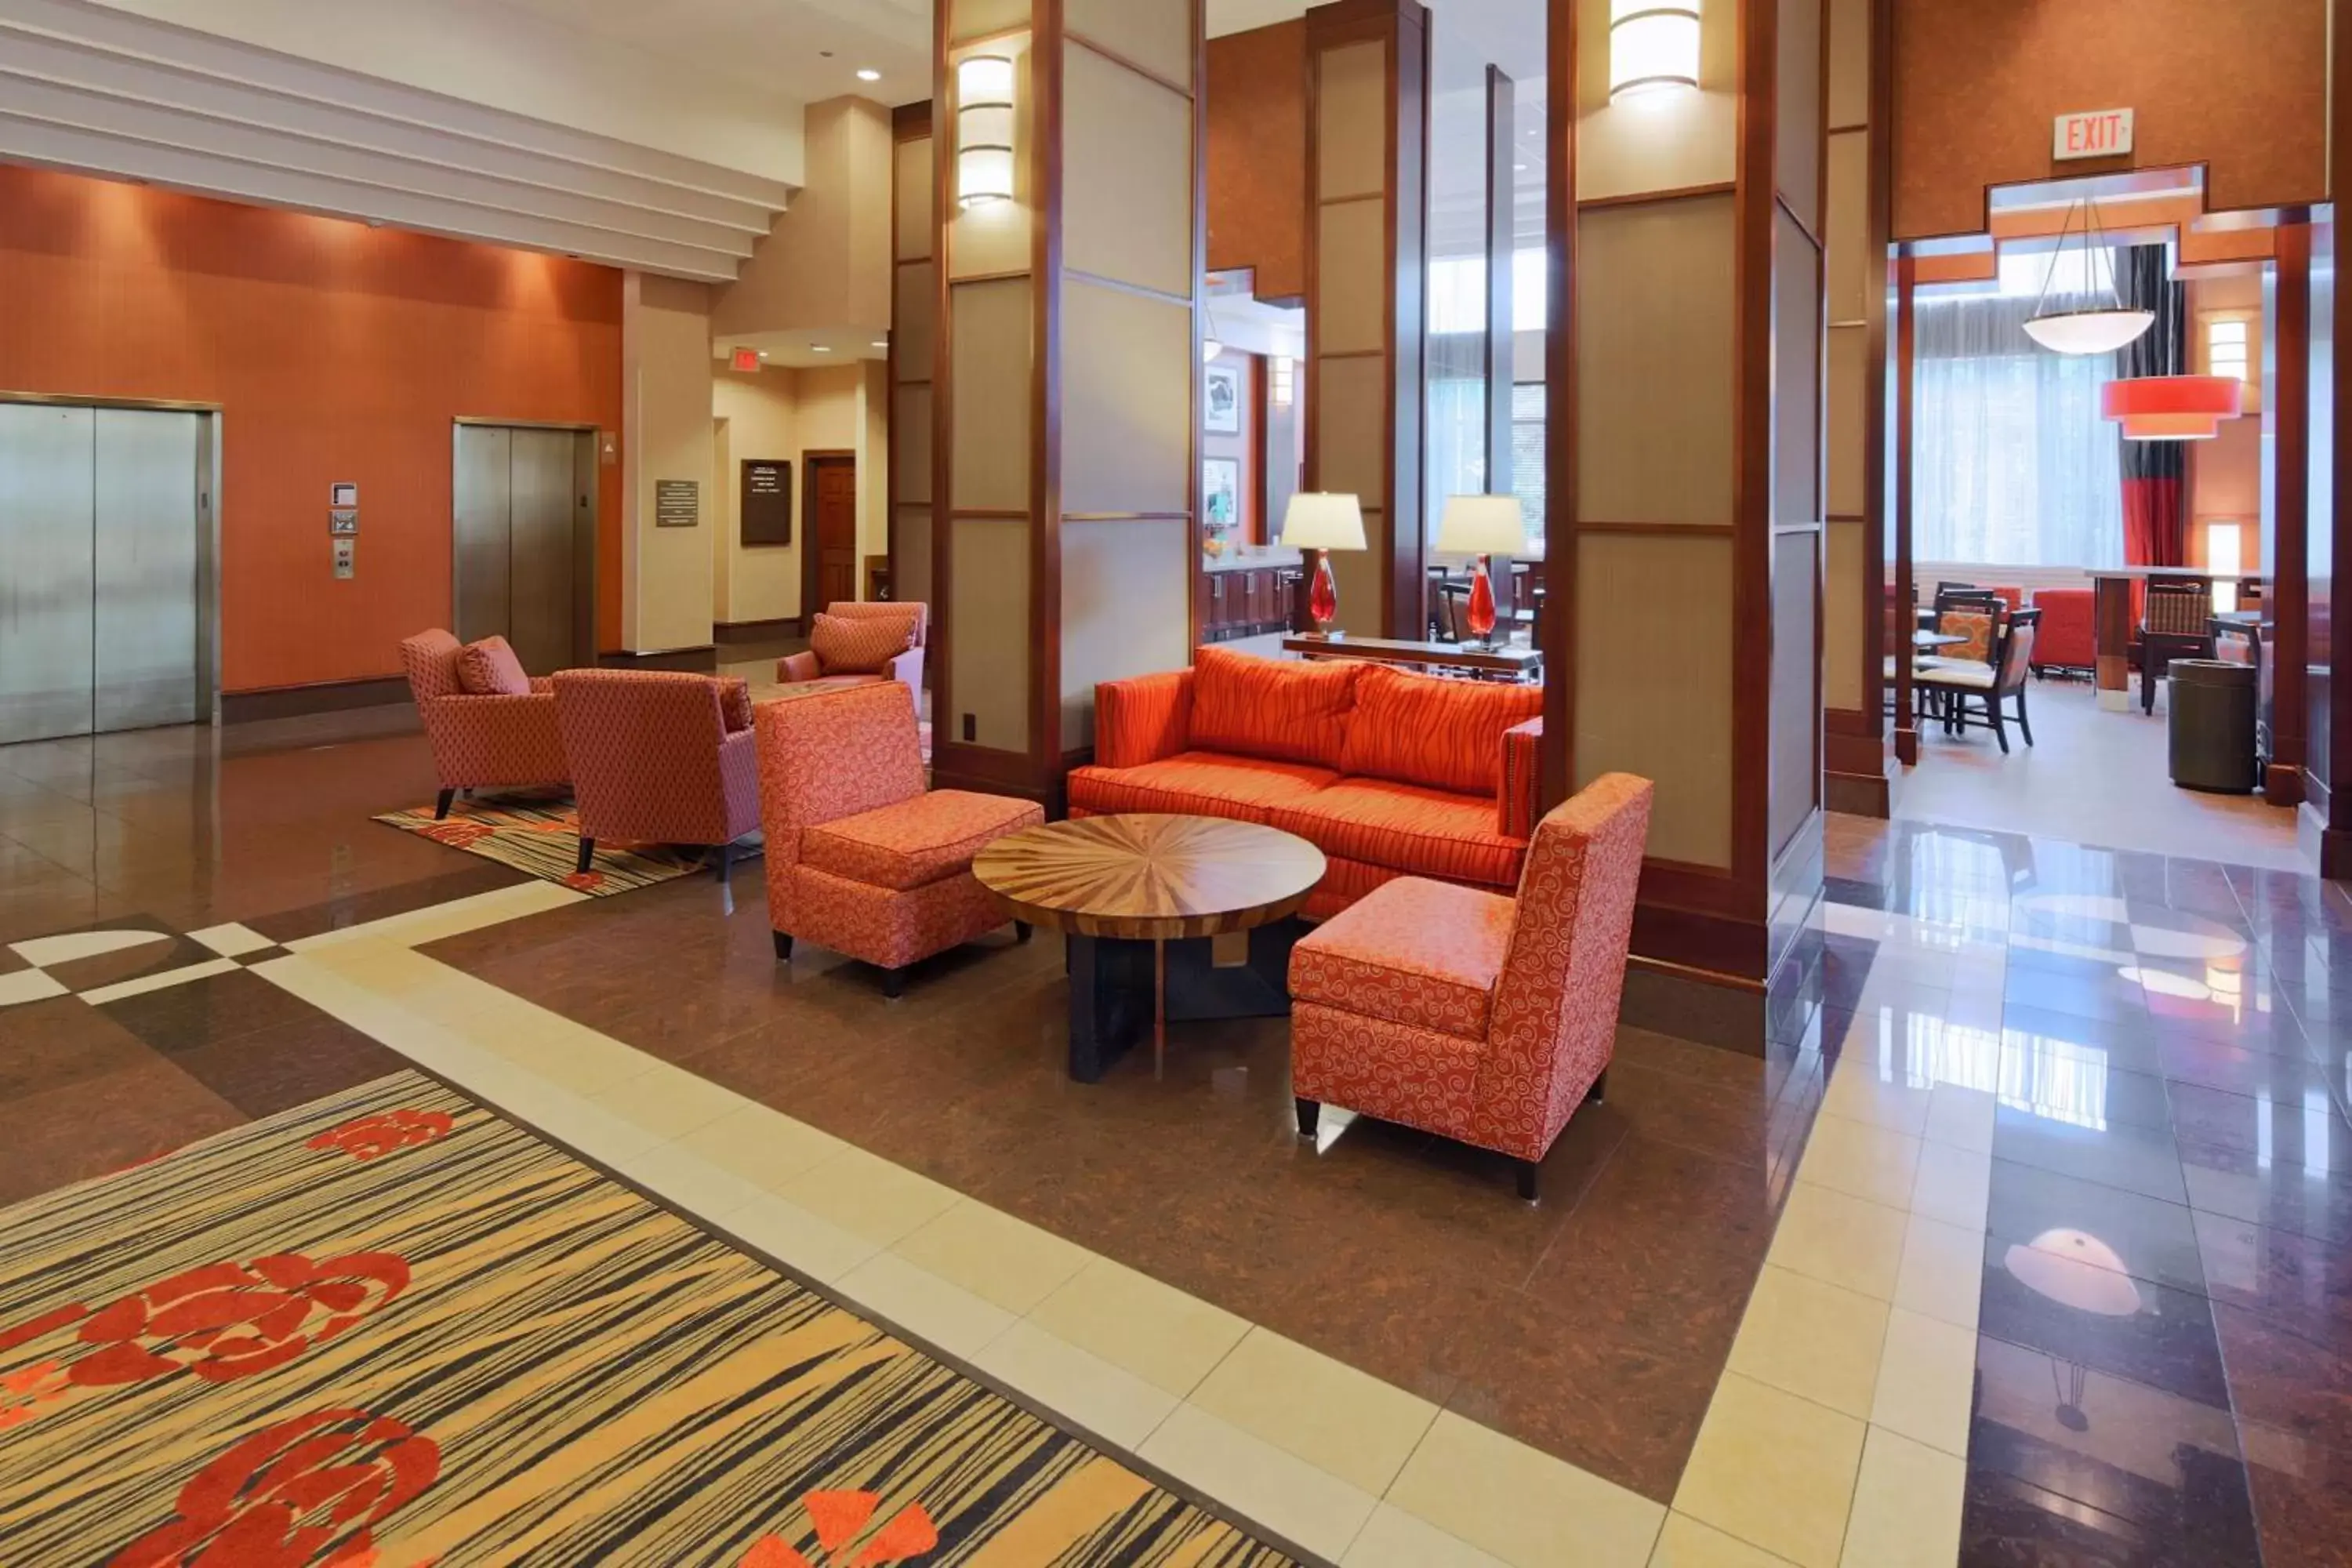 Lobby or reception, Lobby/Reception in Hampton Inn & Suites Arlington Crystal City DCA